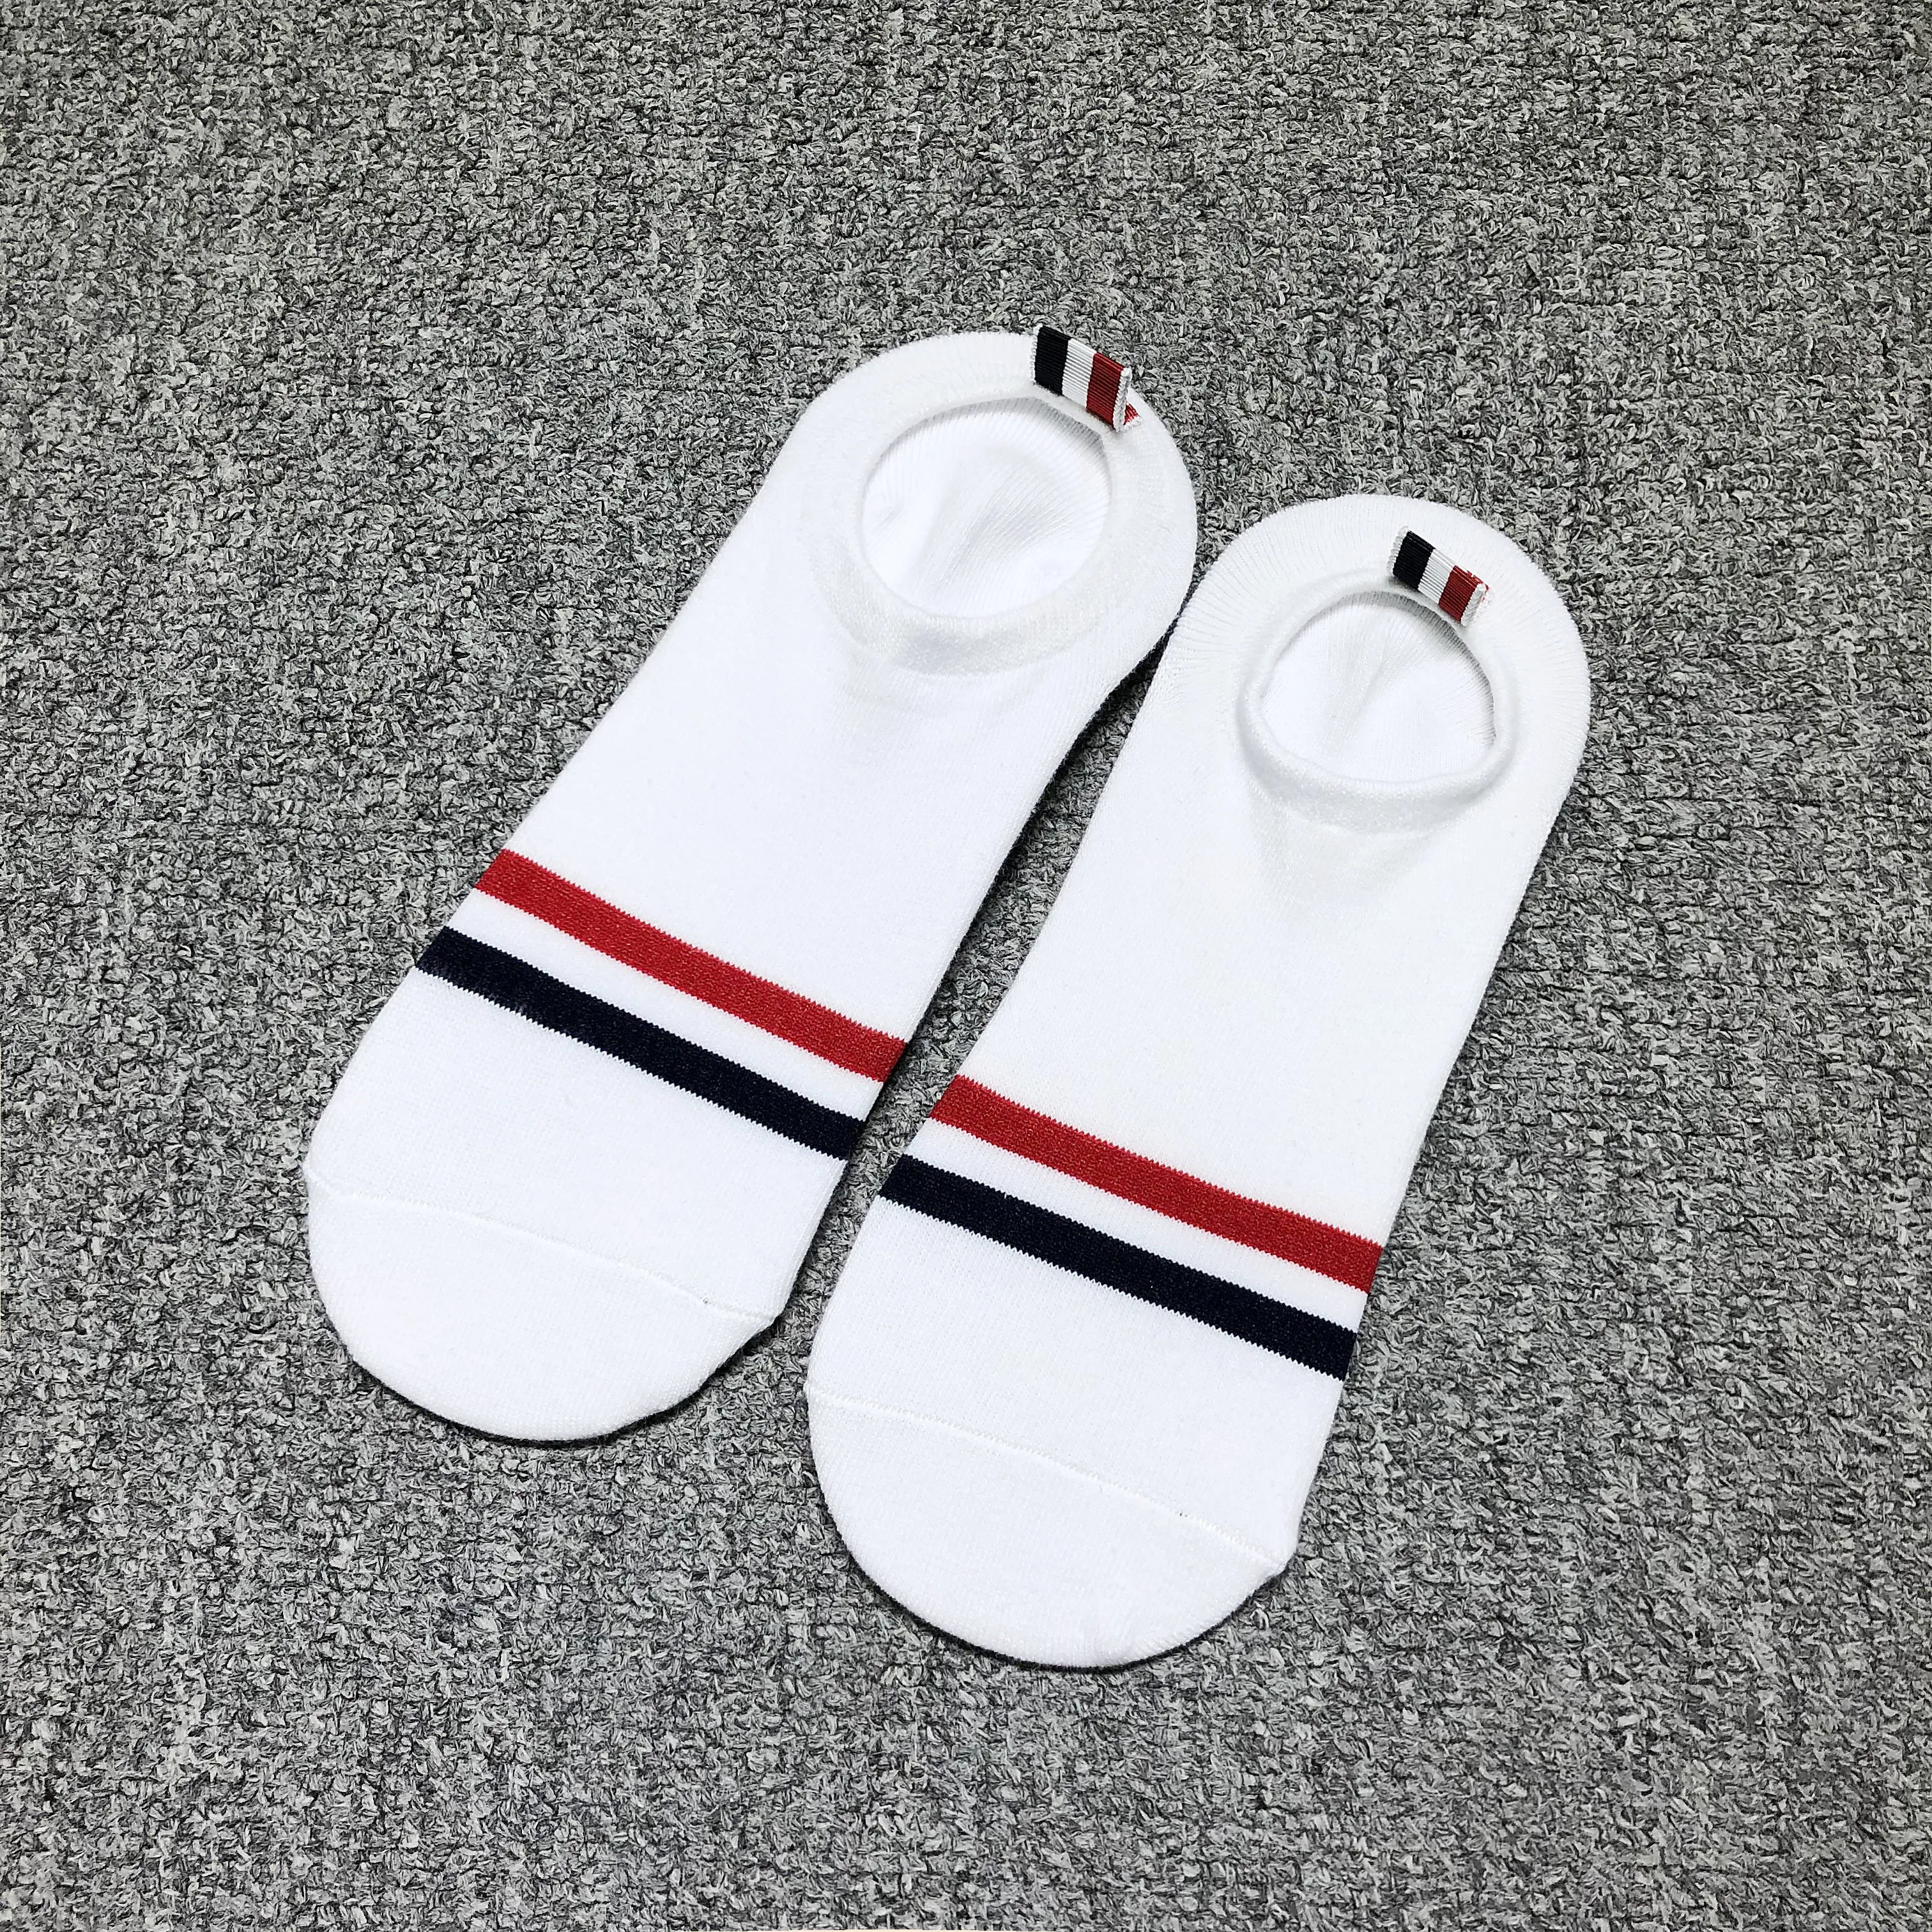 TB THOM 6 Pairs erkek çorapları İnce Pamuklu Lüks Marka RWB Çizgili Halhal Çorap kadın Kore Tasarım Kawaii Çorap Görüntü 4